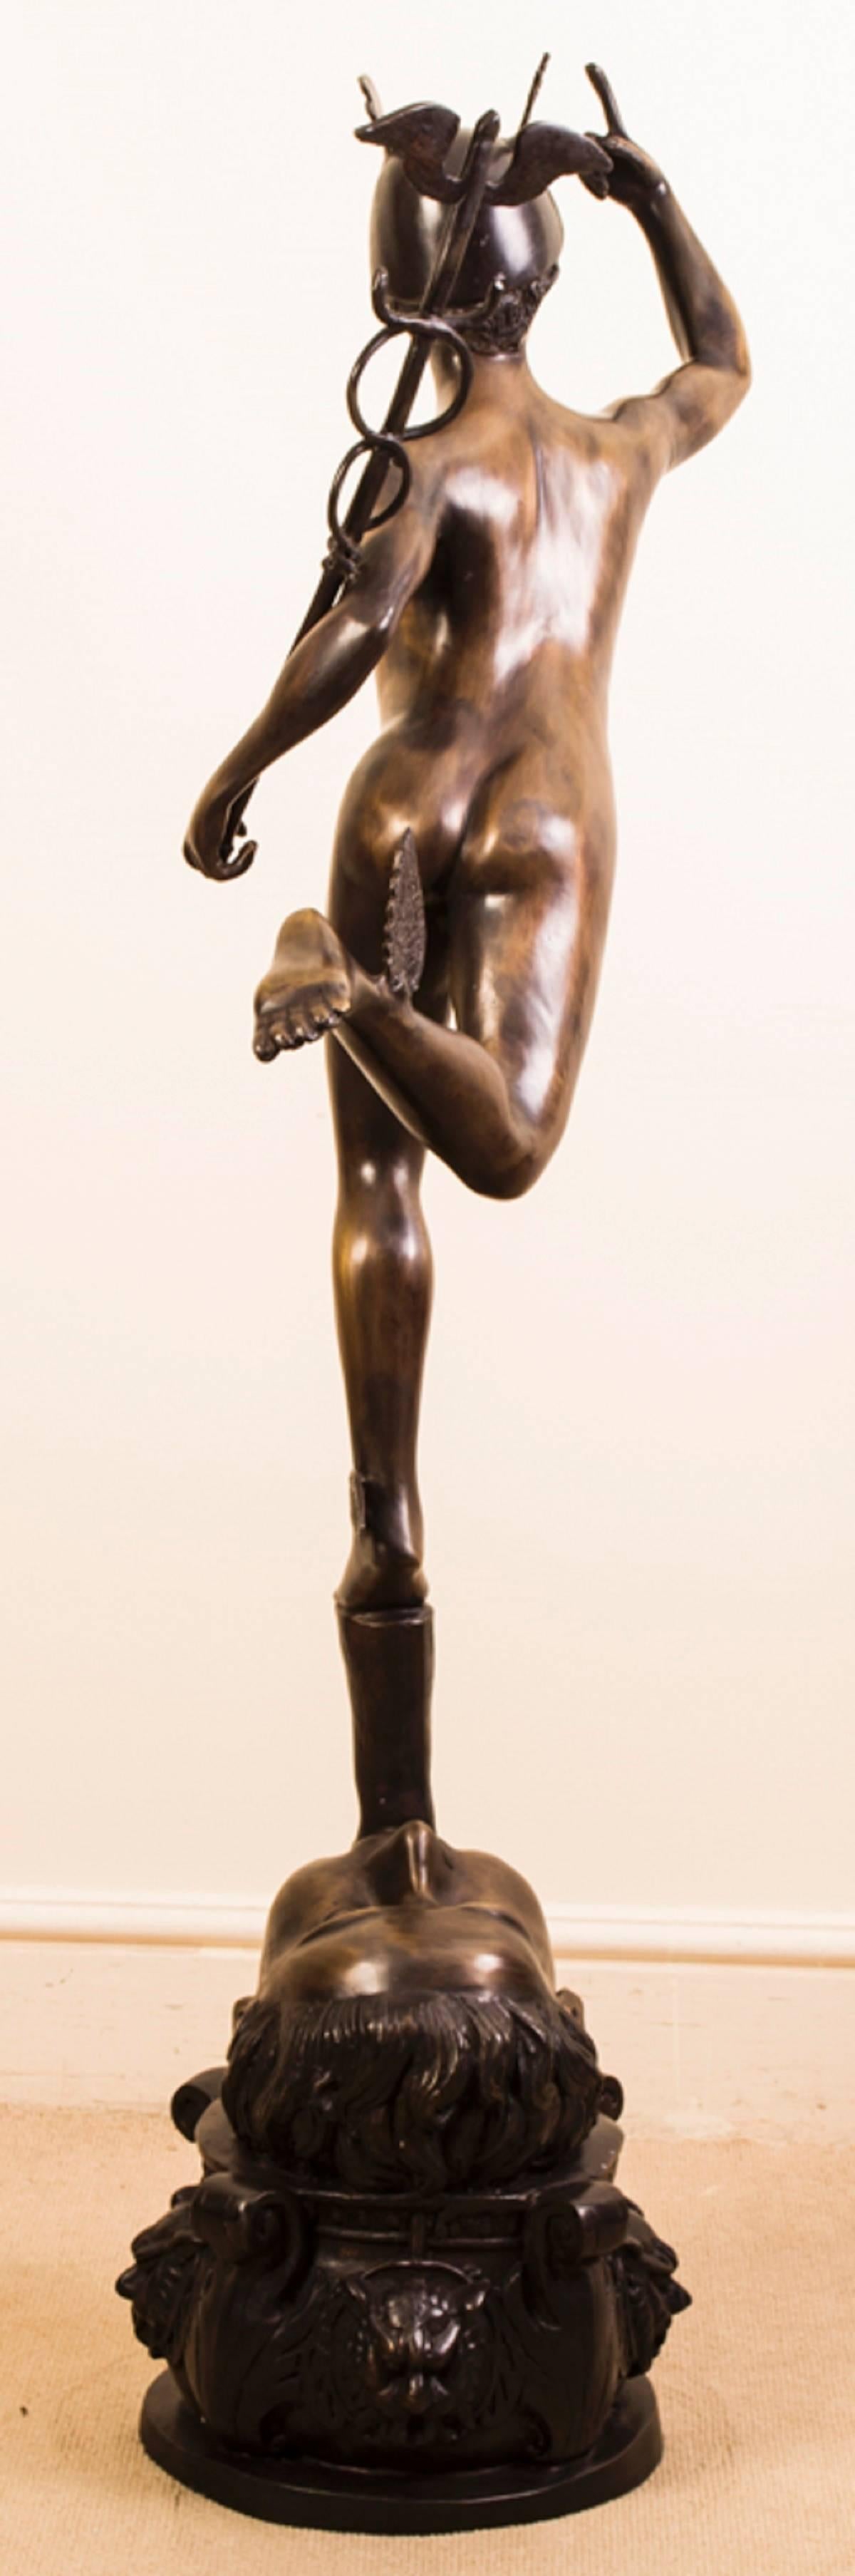 bronze hermes statue